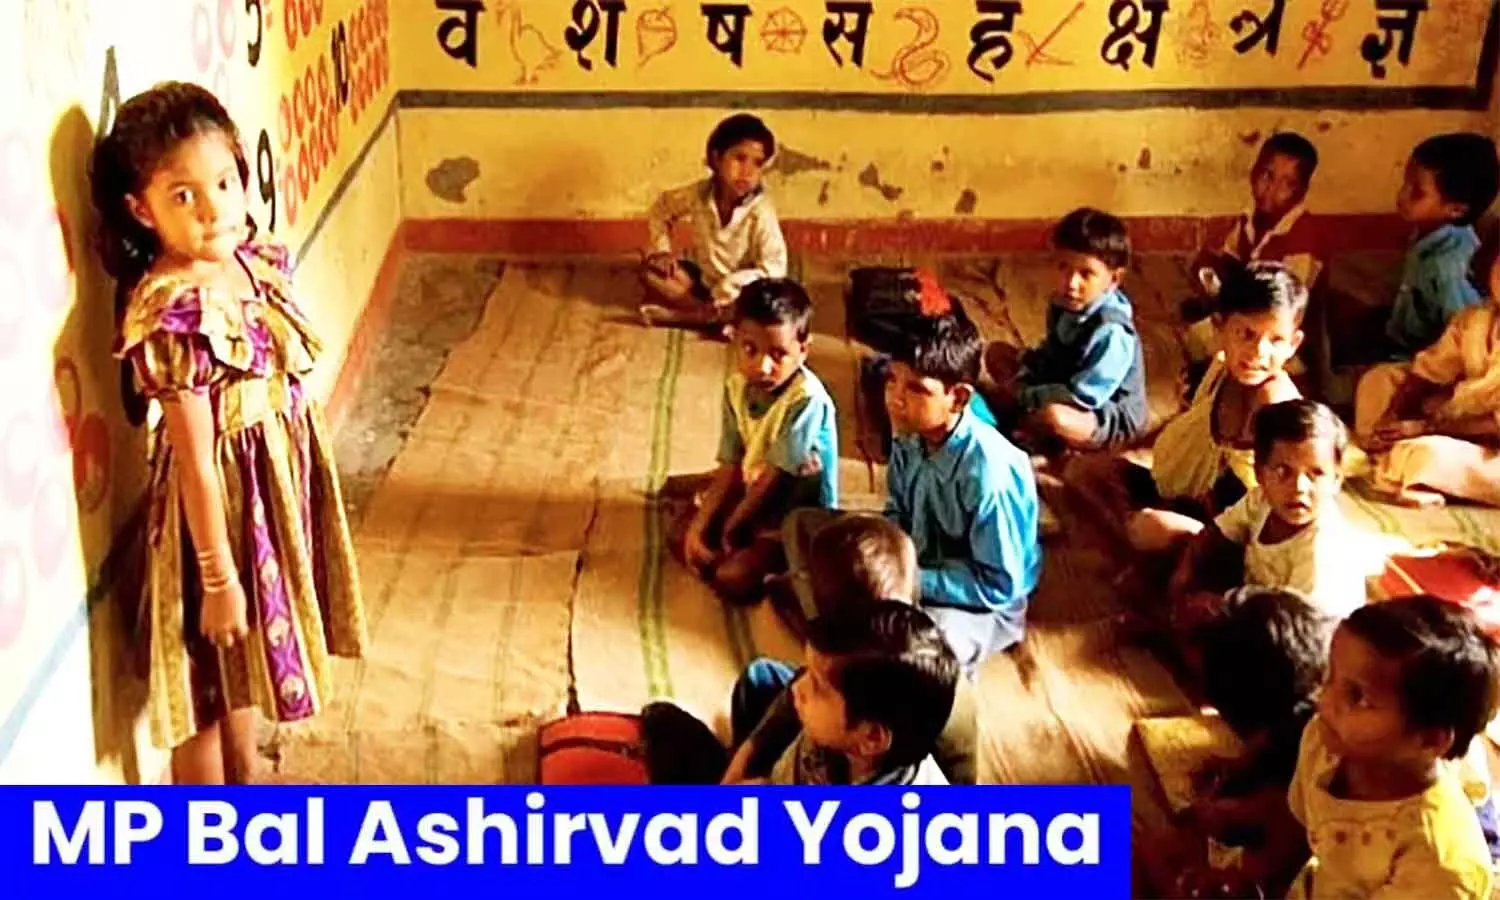 Mukhyamantri Baal Aashirwad Yojana: एमपी में माता-पिता खो चुके बच्चों को सरकार देगी ₹4000 महीना, आवेदन प्रक्रिया प्रारंभ